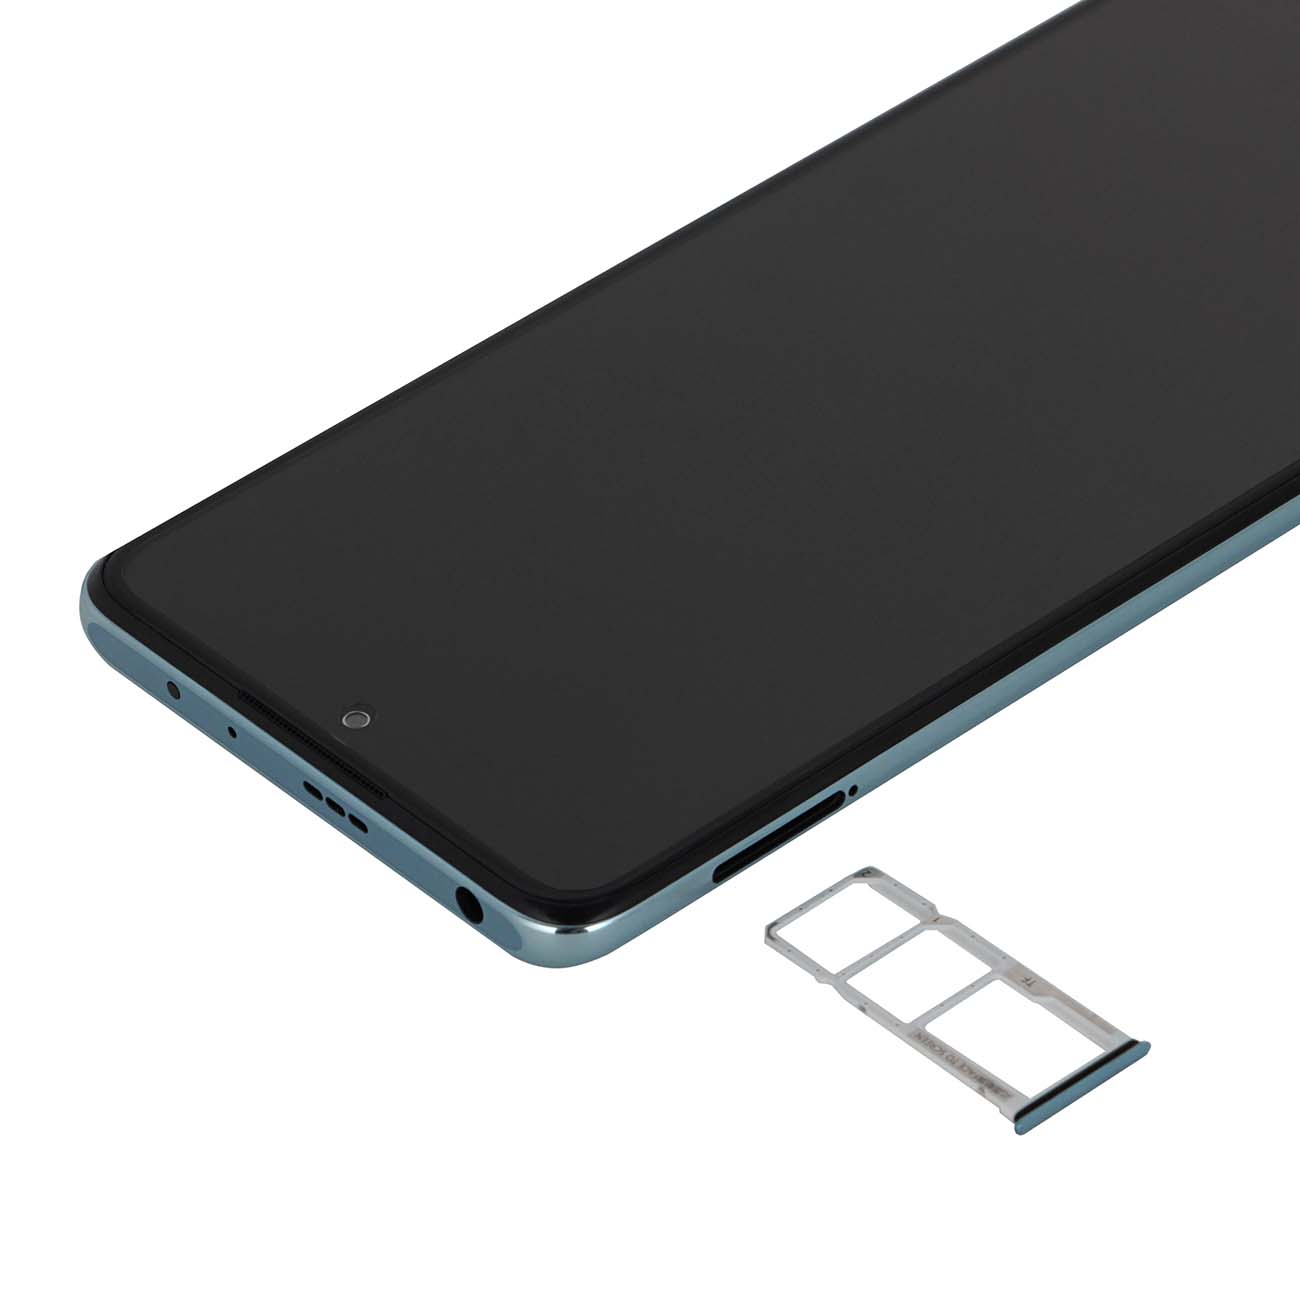 Купить смартфон xiaomi redmi note 10 pro 128gb glacier blue Смартфоны в официальном магазине Apple, Samsung, Xiaomi. iPixel.ru Купить, заказ, кредит, рассрочка, отзывы,  характеристики, цена,  фотографии, в подарок.